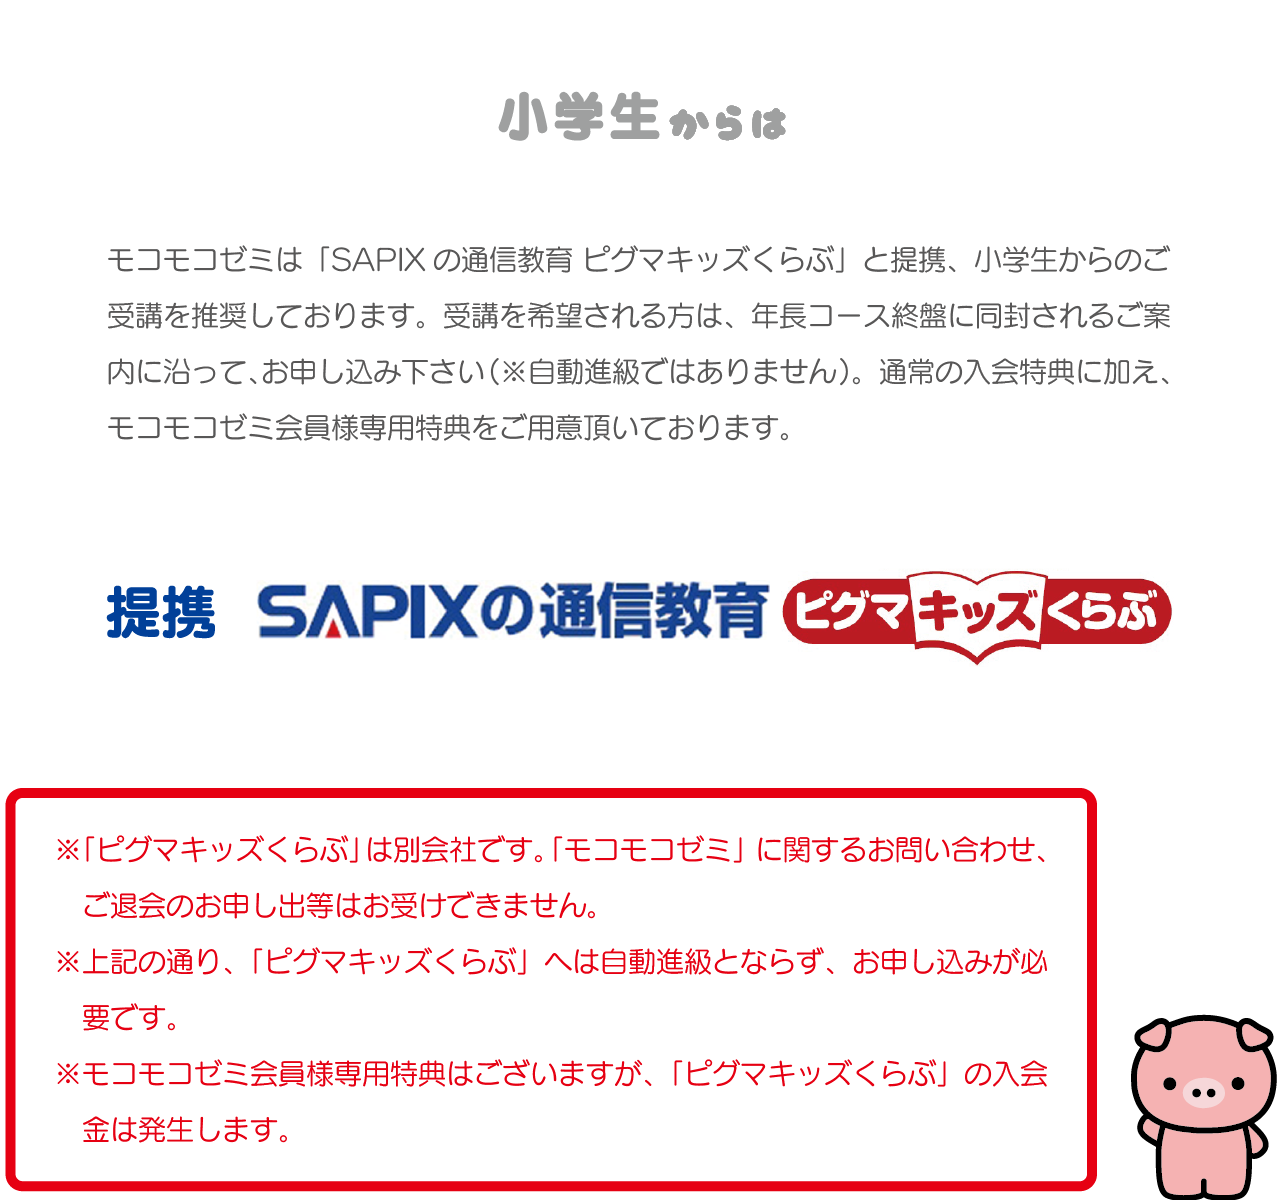 安く購入 sapix通信教材ピグマキッズくらぶ １年生2021年4月～2022年3月一年分 参考書